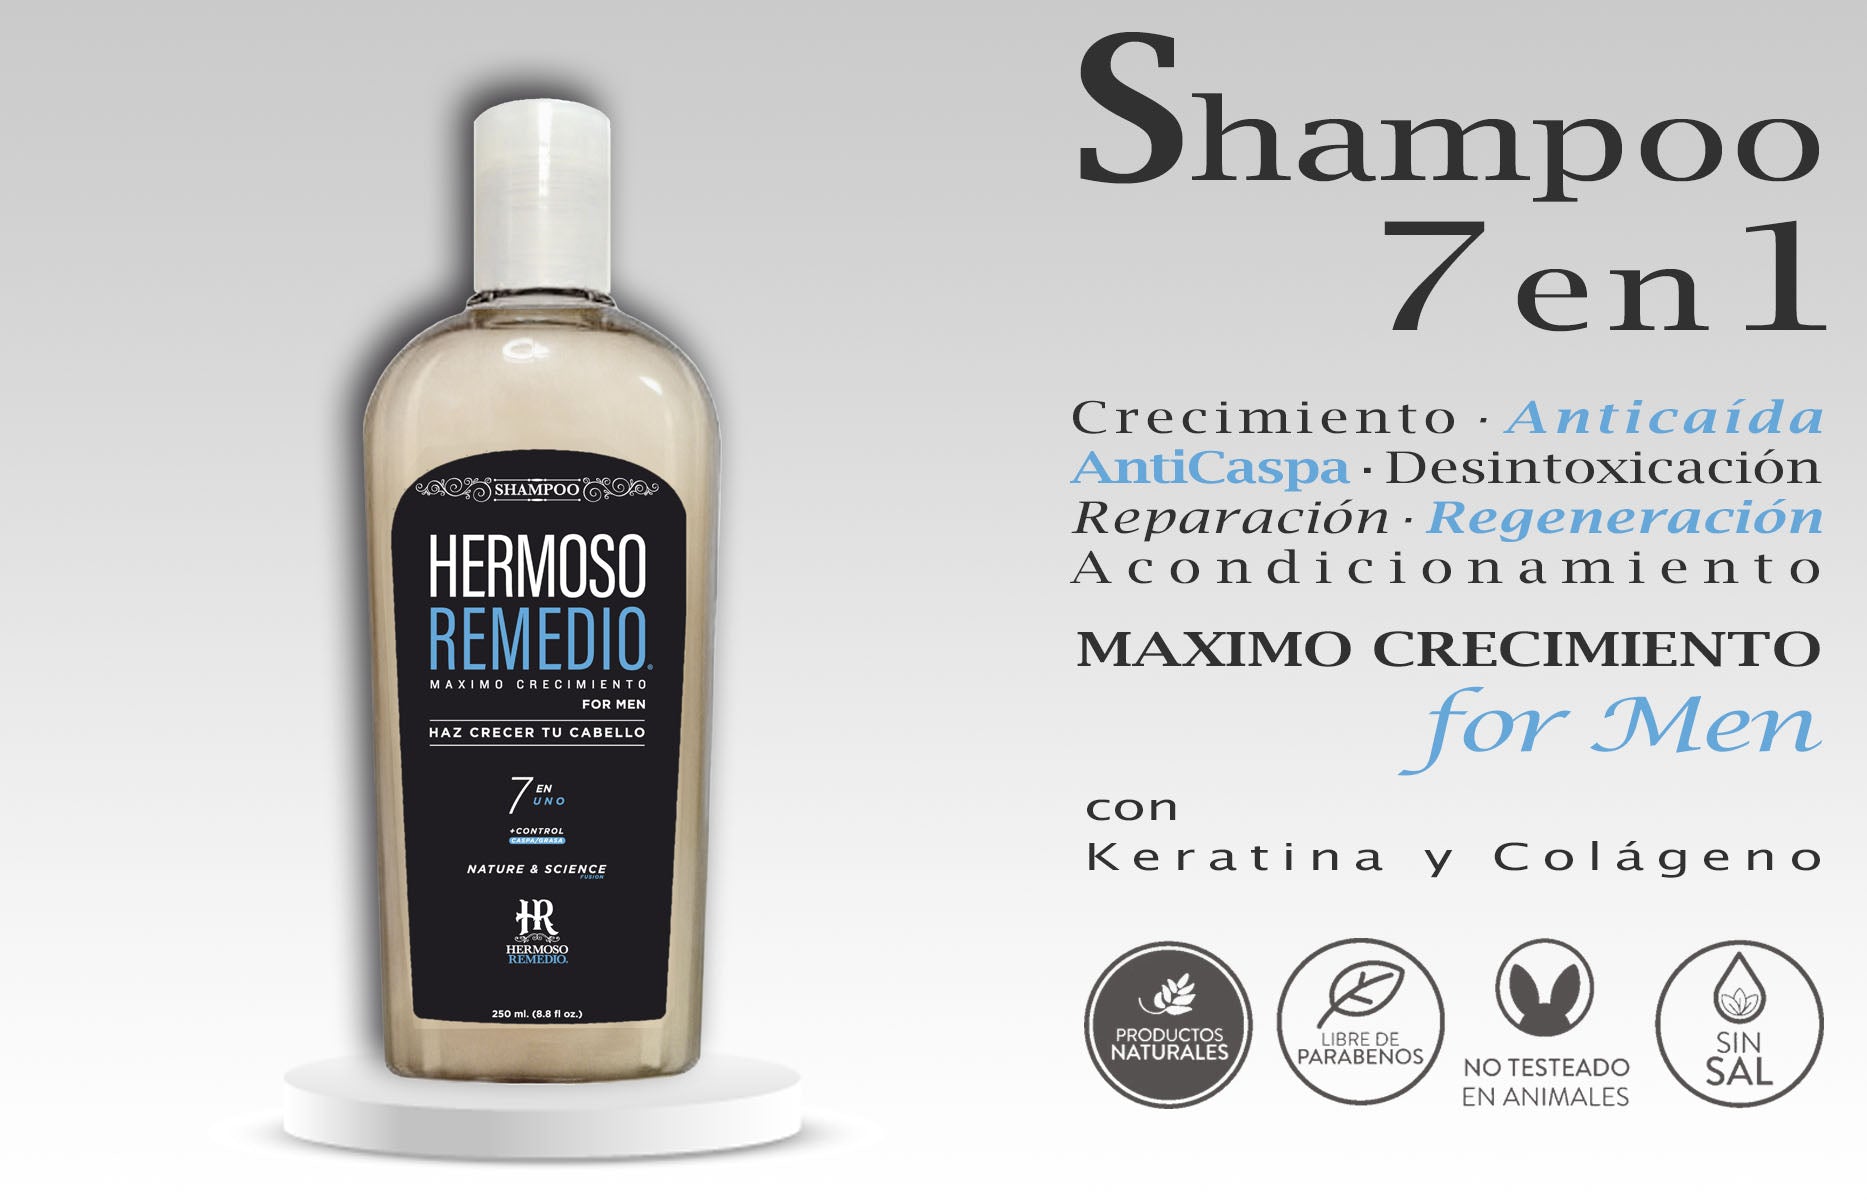 Shampoo Hermoso Remedio para Hombre